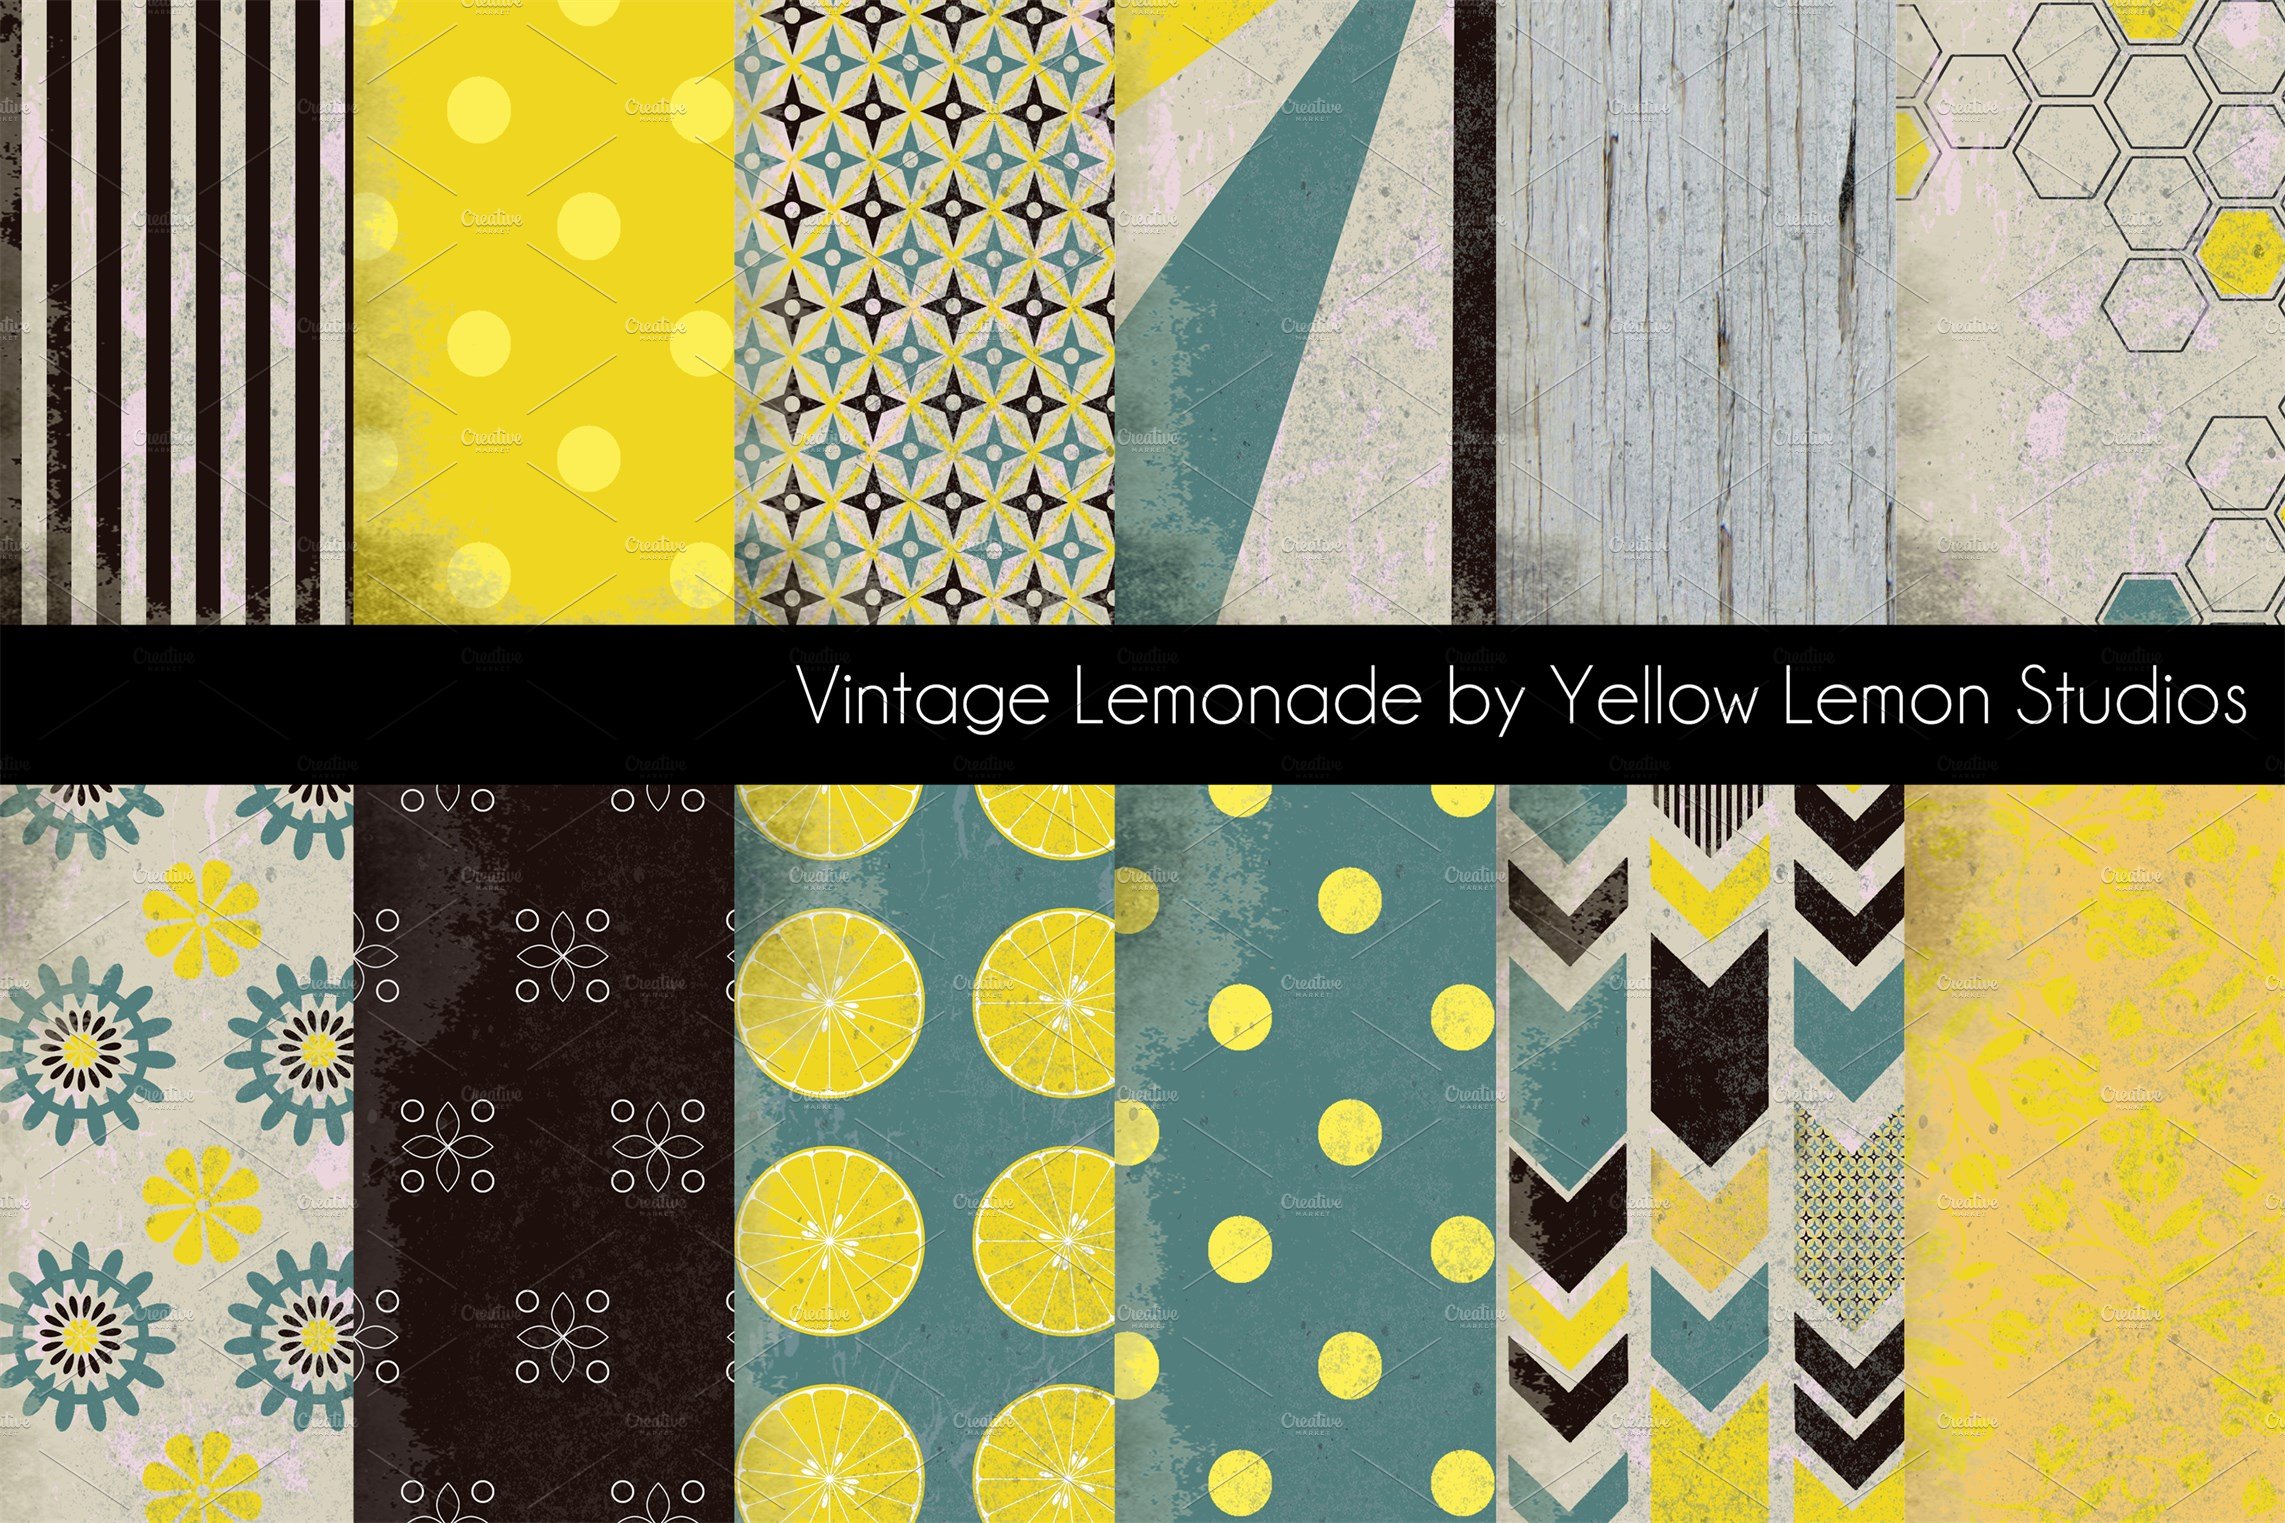 Vintage Lemonade Stand grunge design cover image.